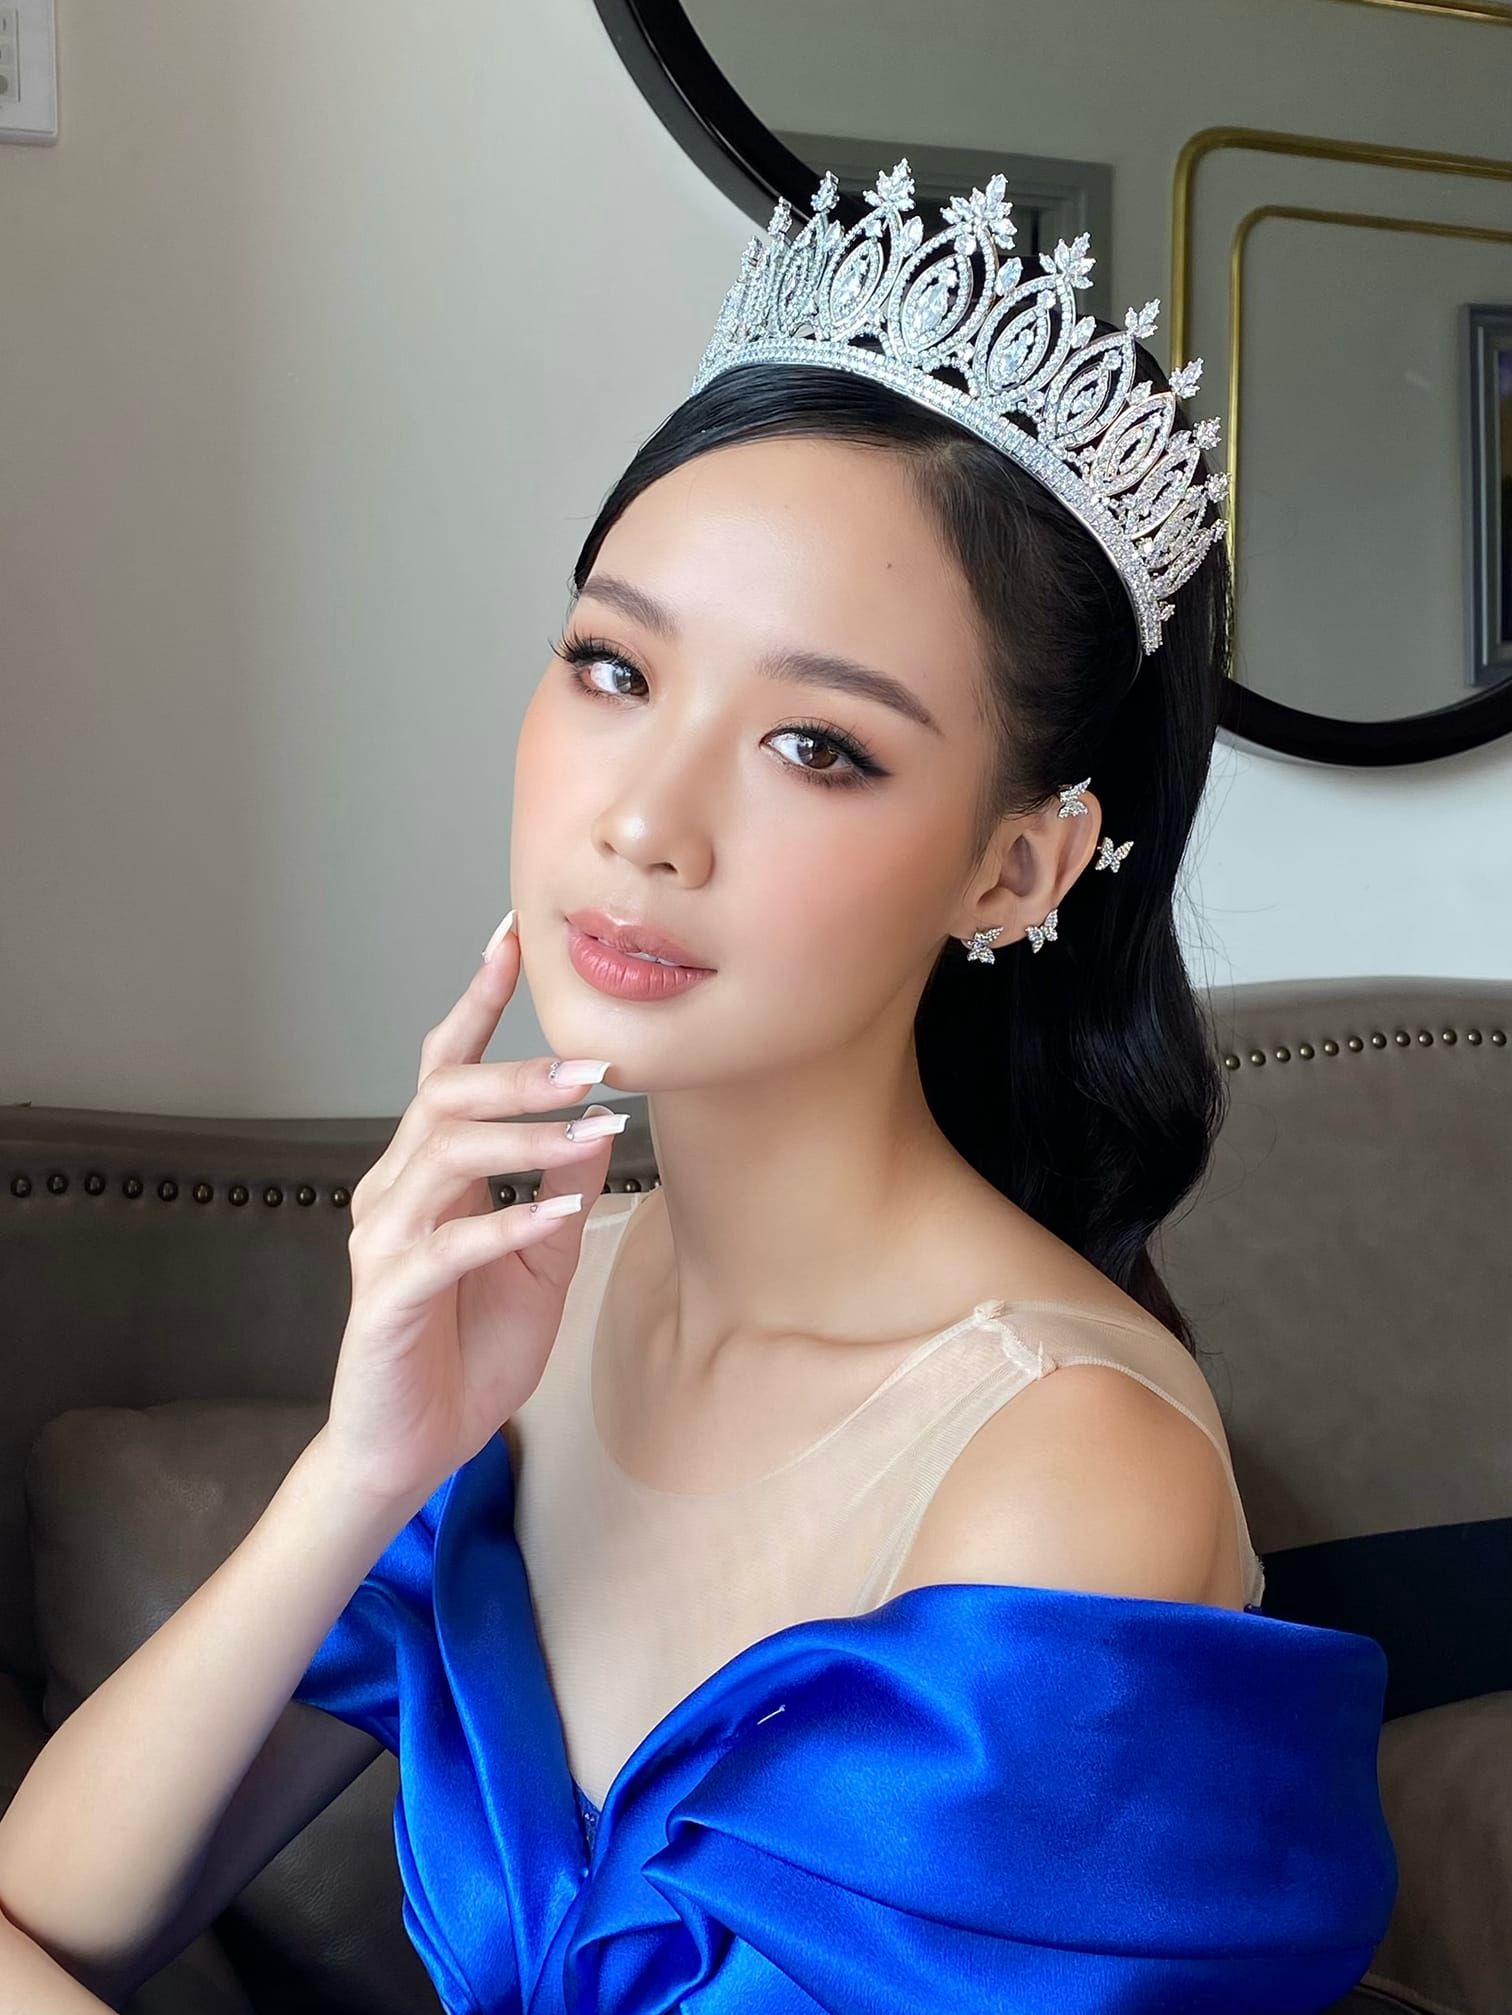 Nhan sắc quyến rũ, lôi cuốn của Á hậu cao 1,85 m sắp thi Miss Intercontinental 2022 - Ảnh 1.